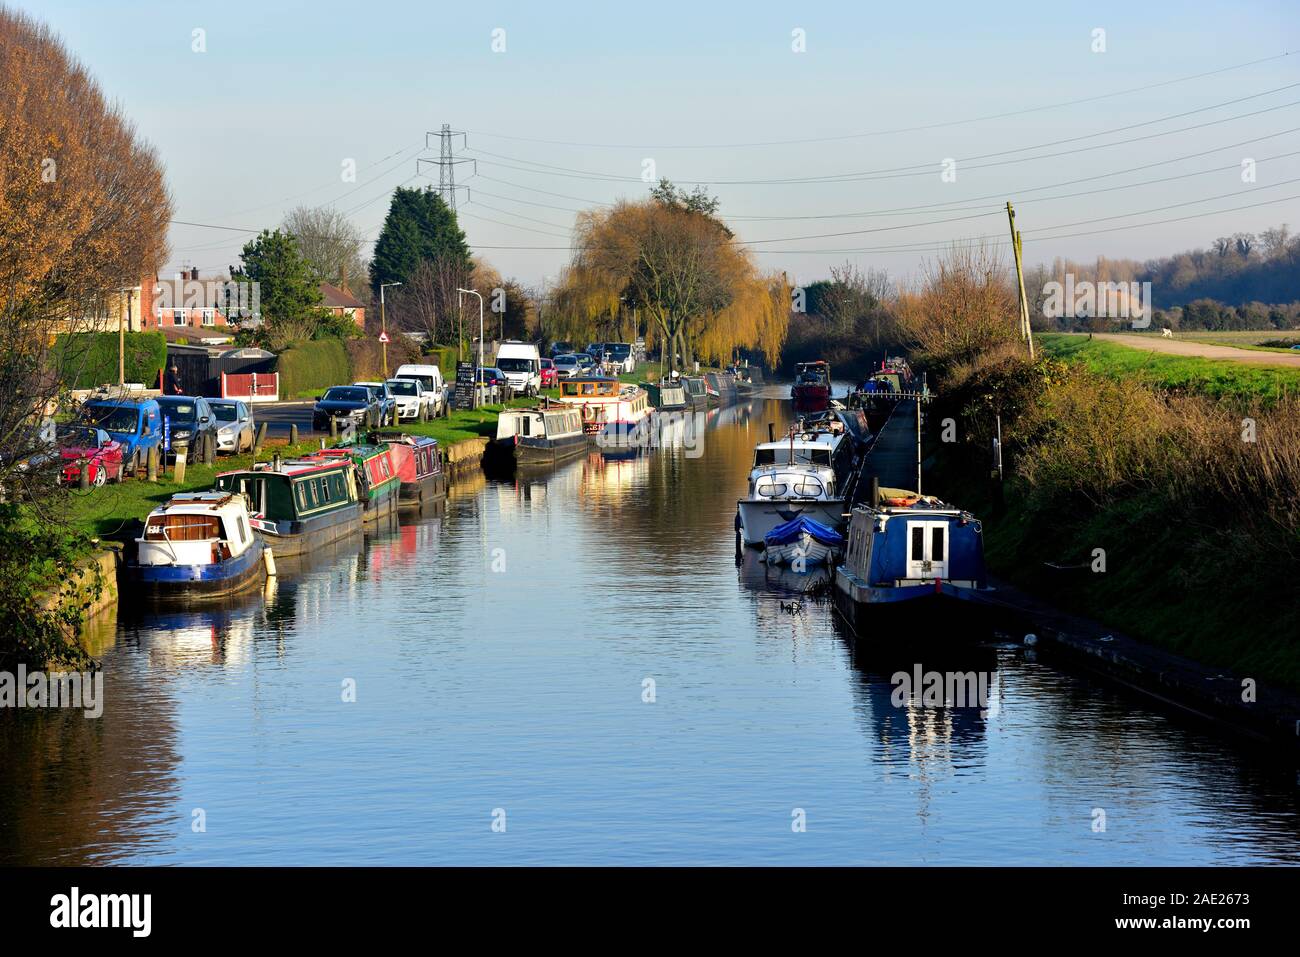 The Nottingham and Beeston Canal,Beeston,Nottingham,England,UK Stock Photo